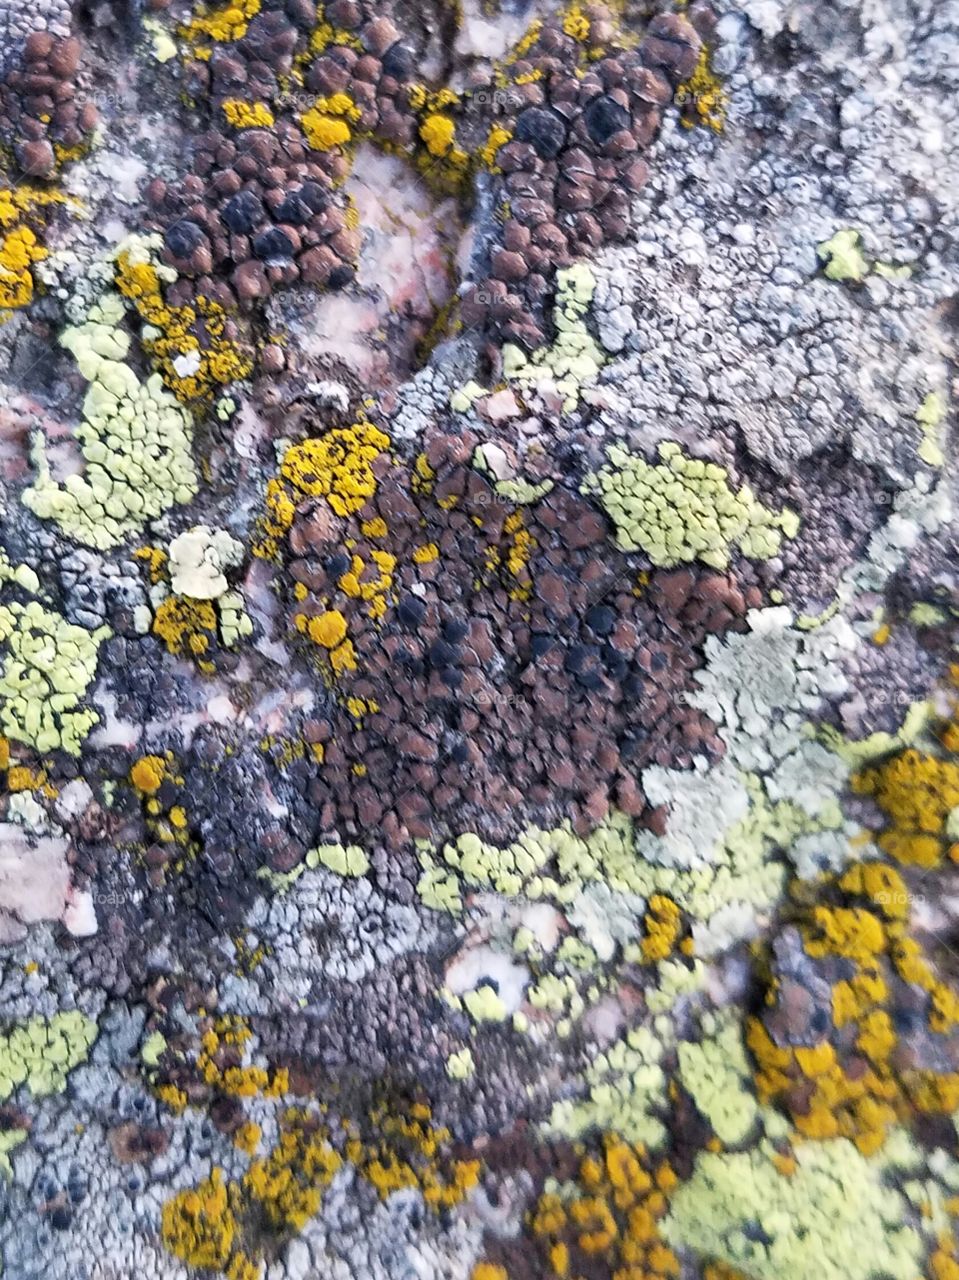 Multicolored Lichen on a rock in Staunton State Park